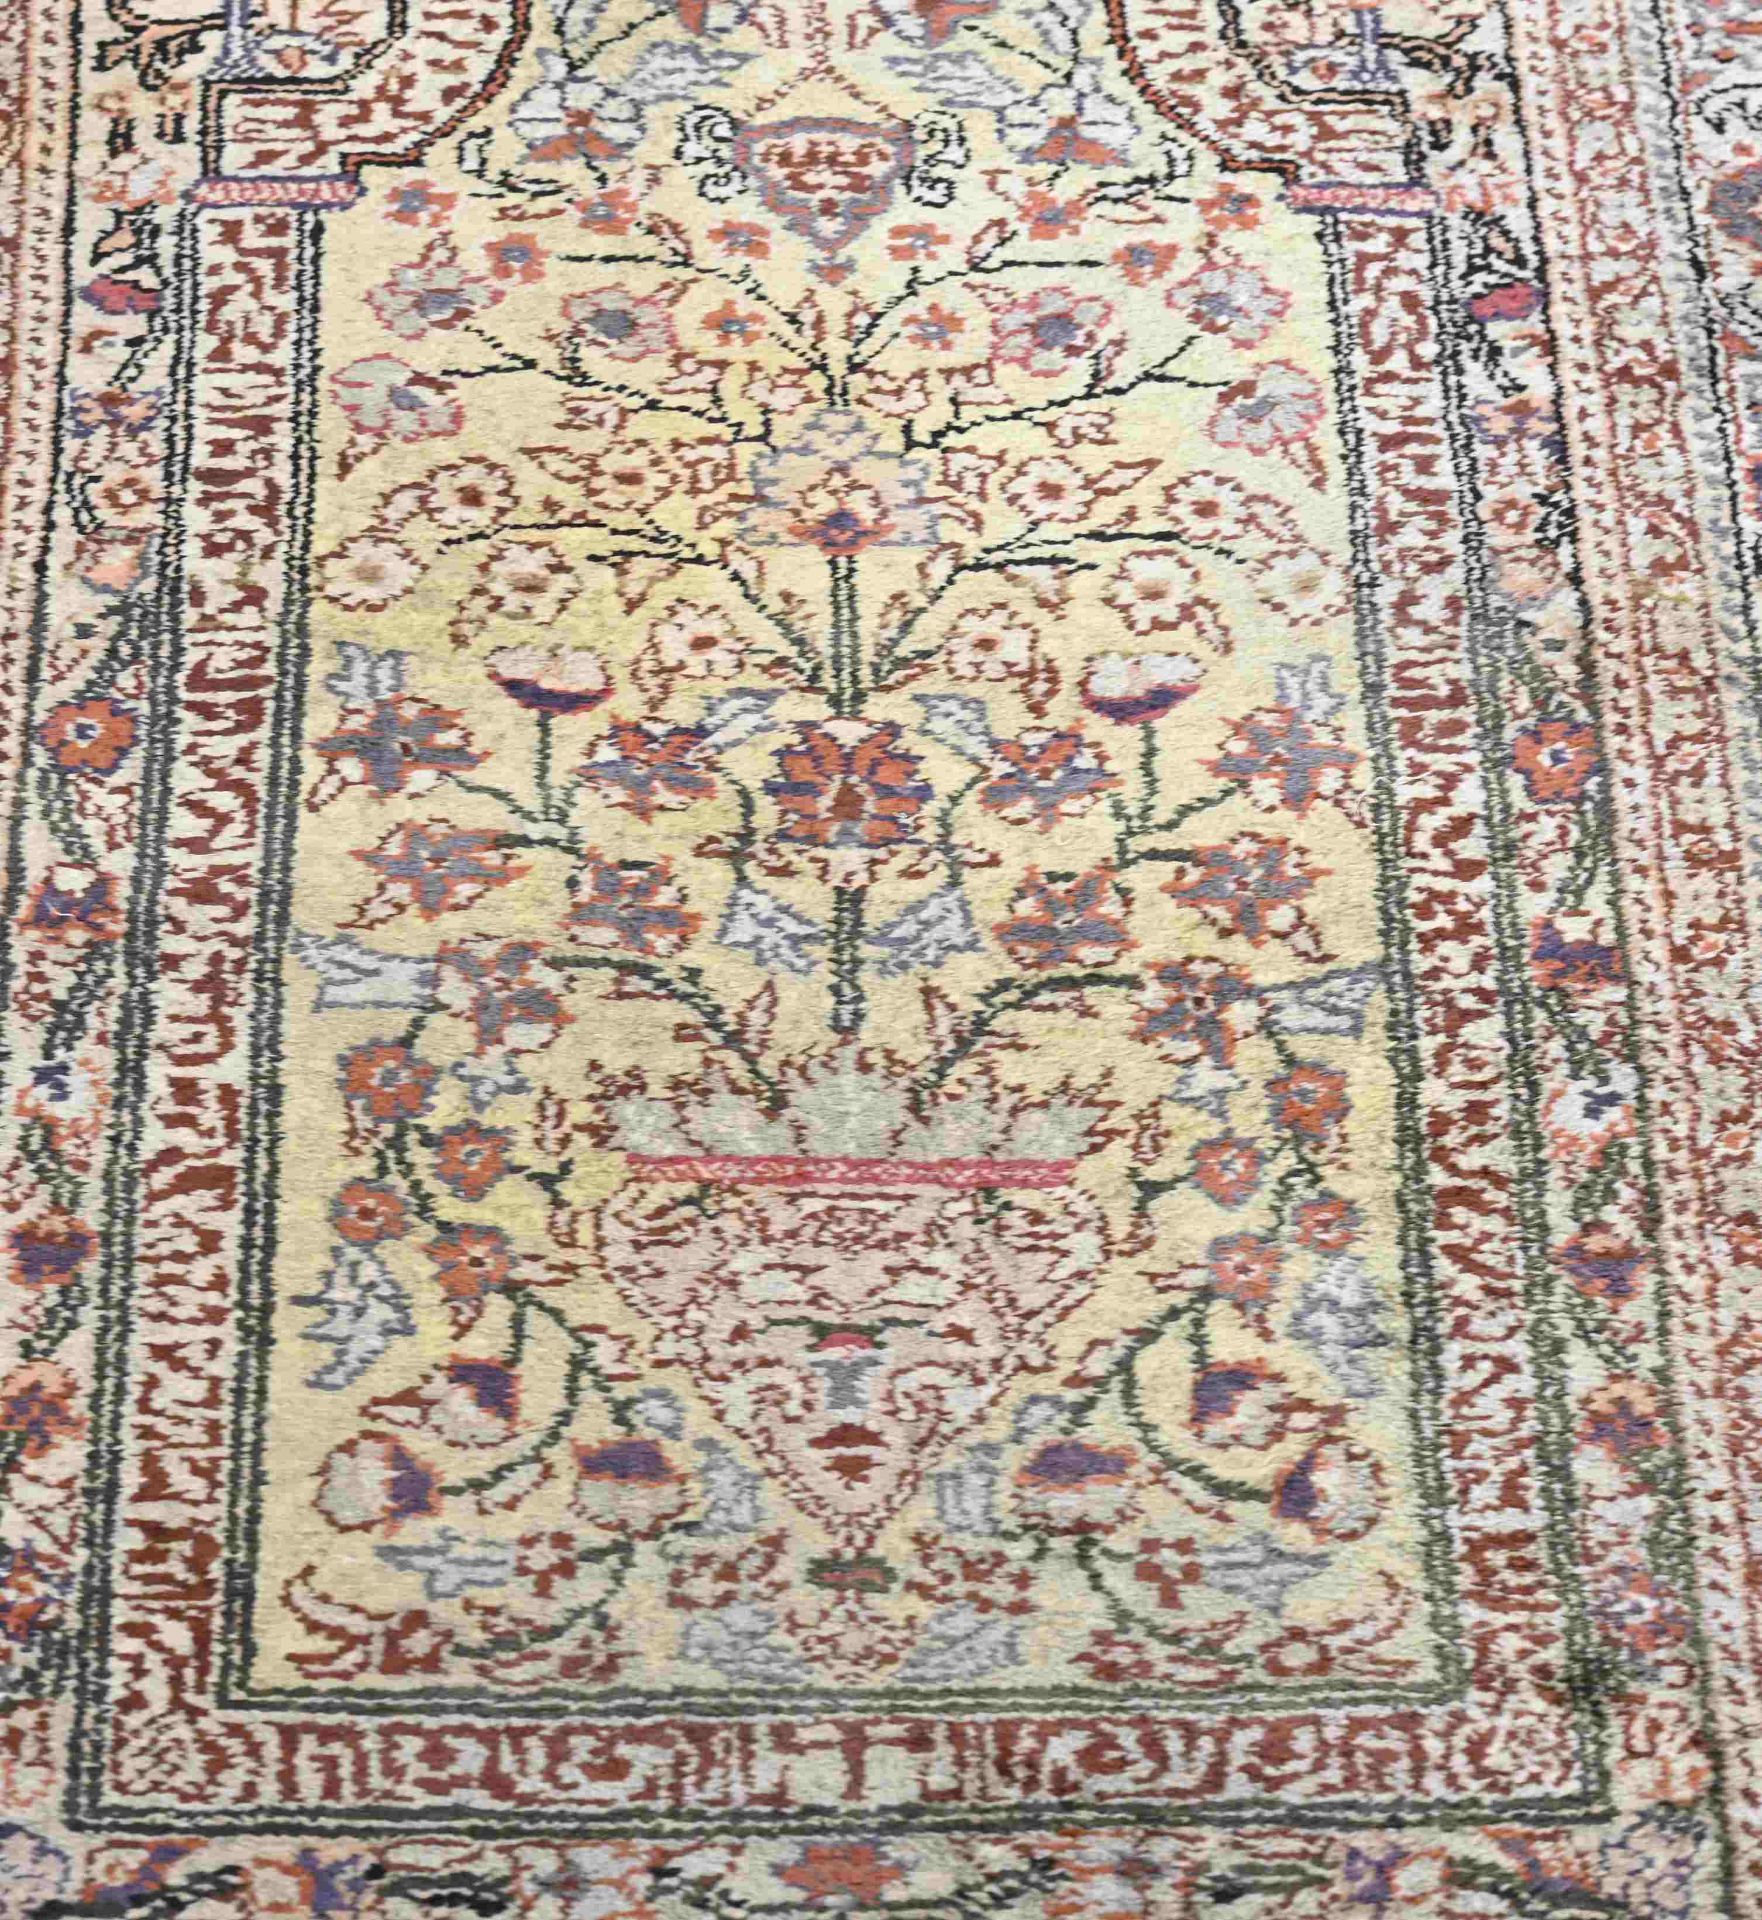 Persian prayer rug, 142 x 88 cm. - Image 2 of 3